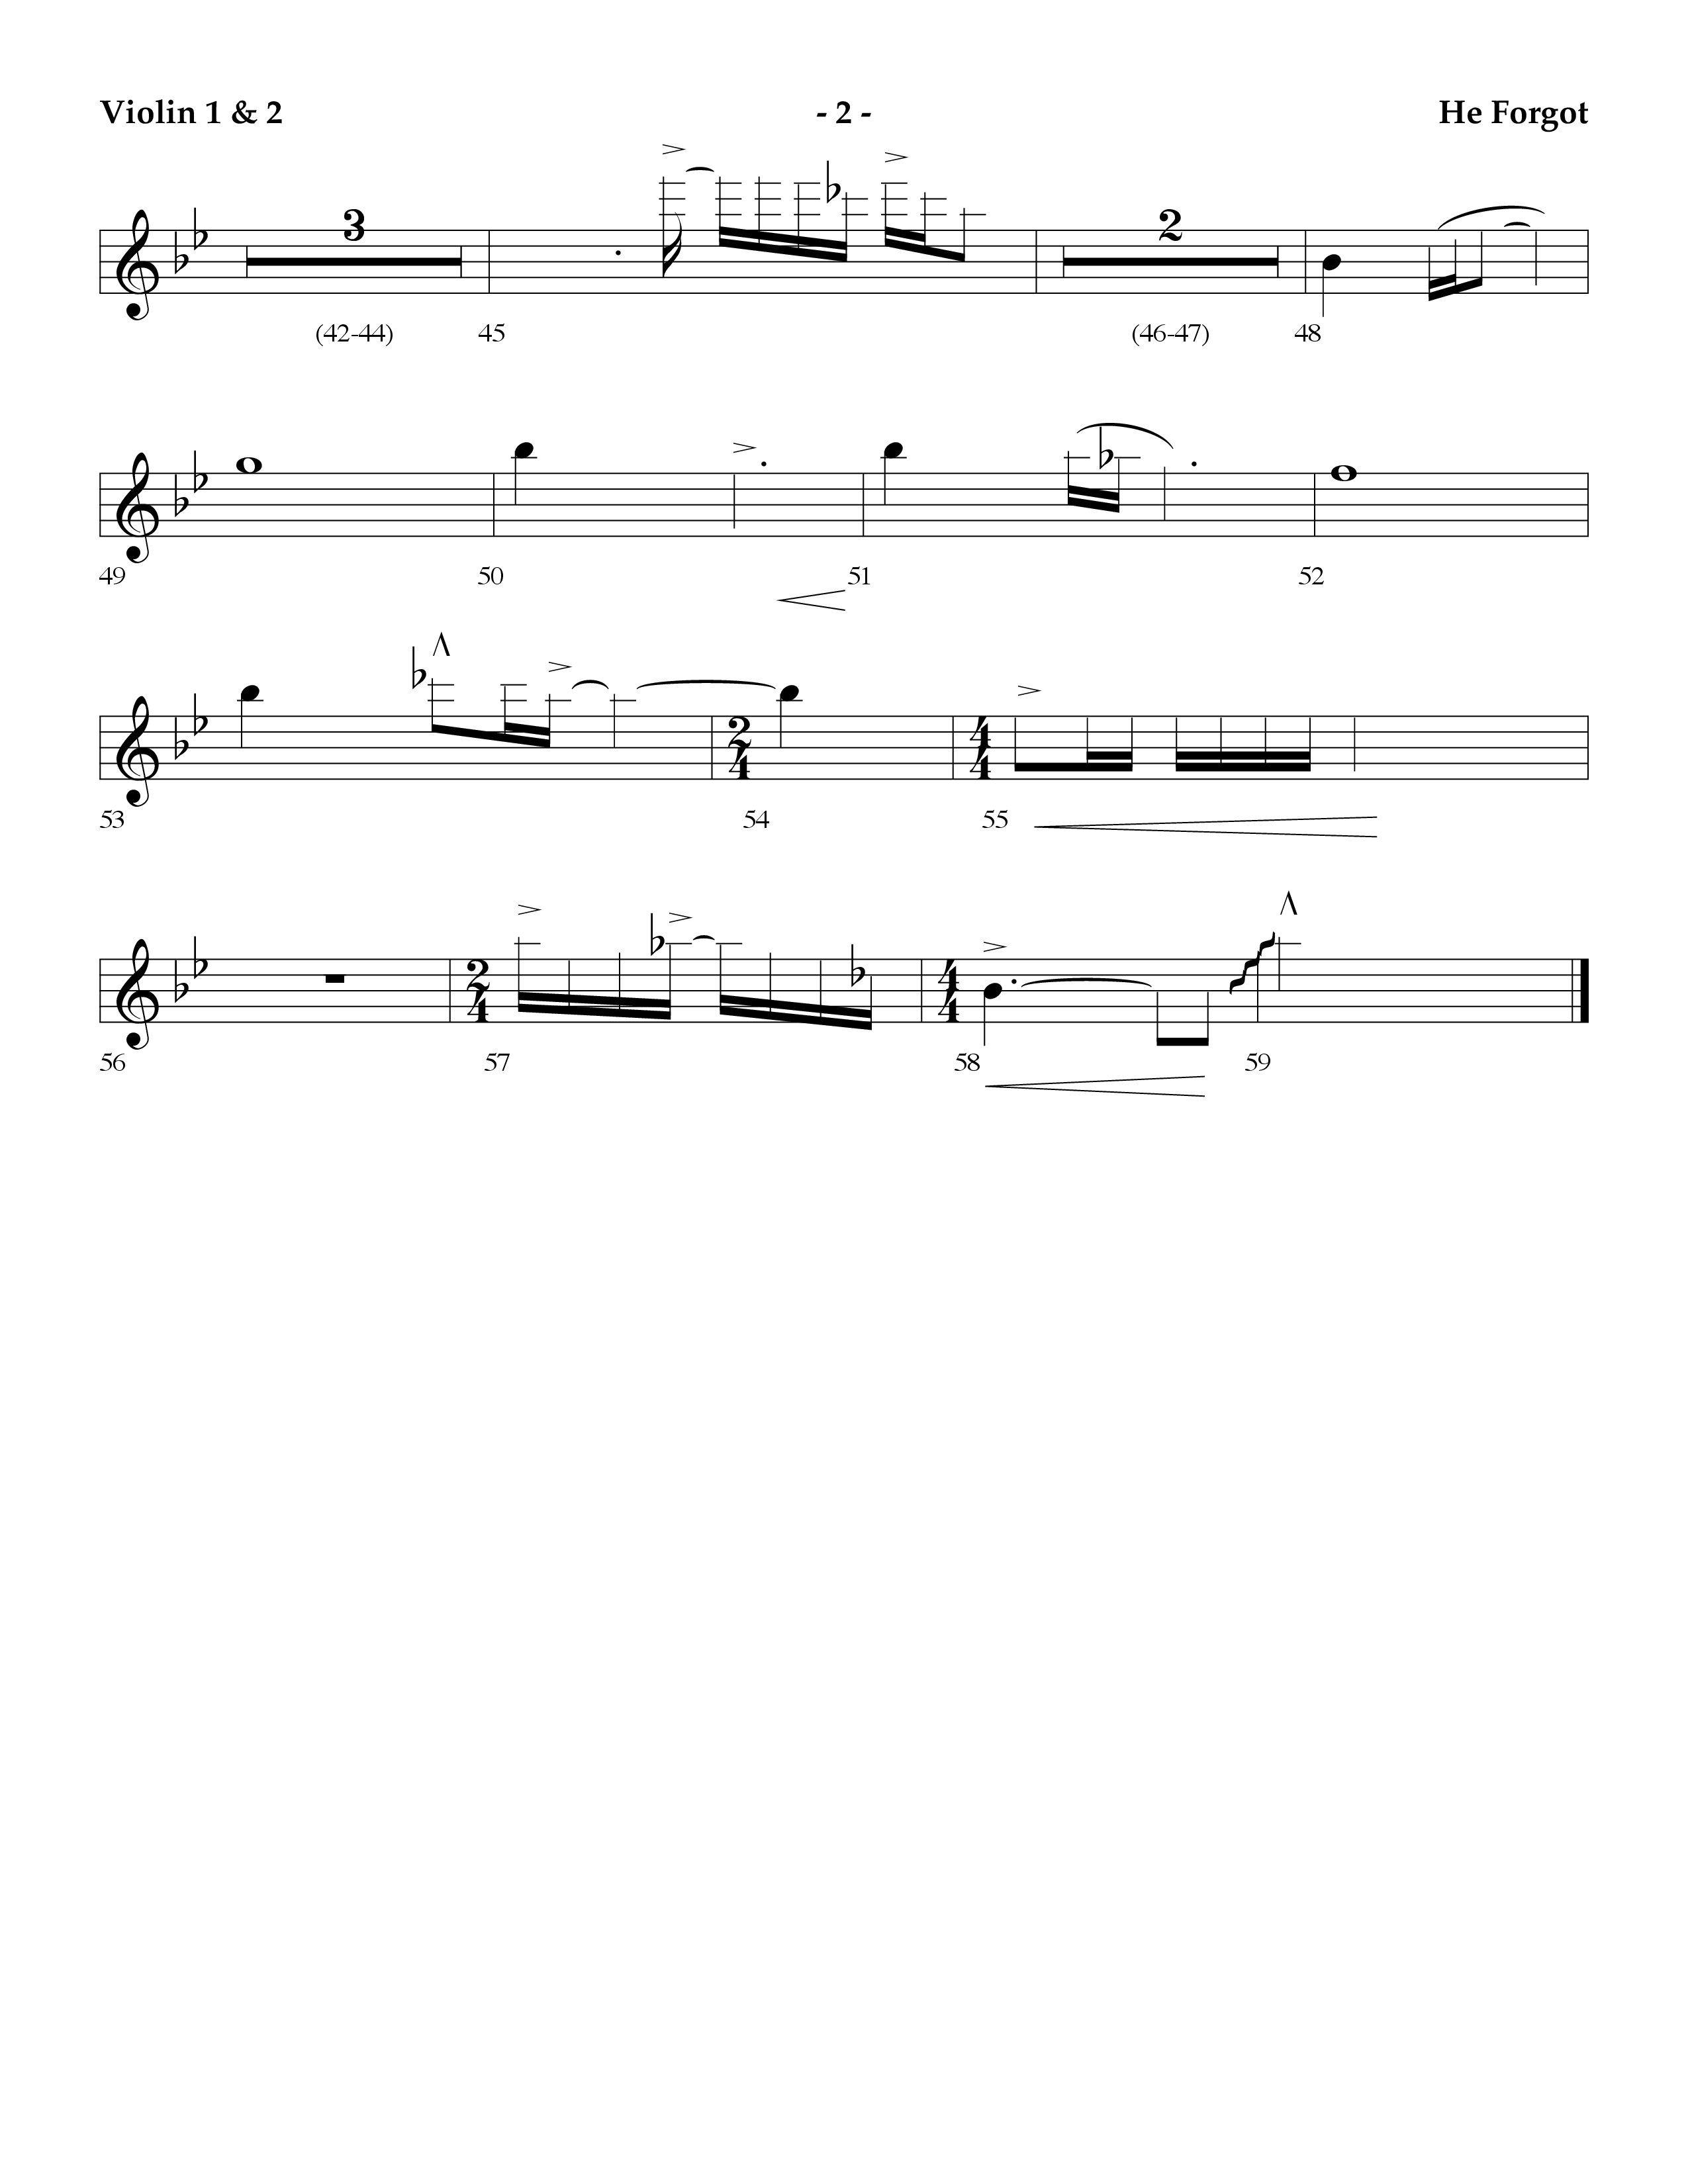 He Forgot (Choral Anthem SATB) Violin 1/2 (Lifeway Choral / Arr. Cliff Duren)